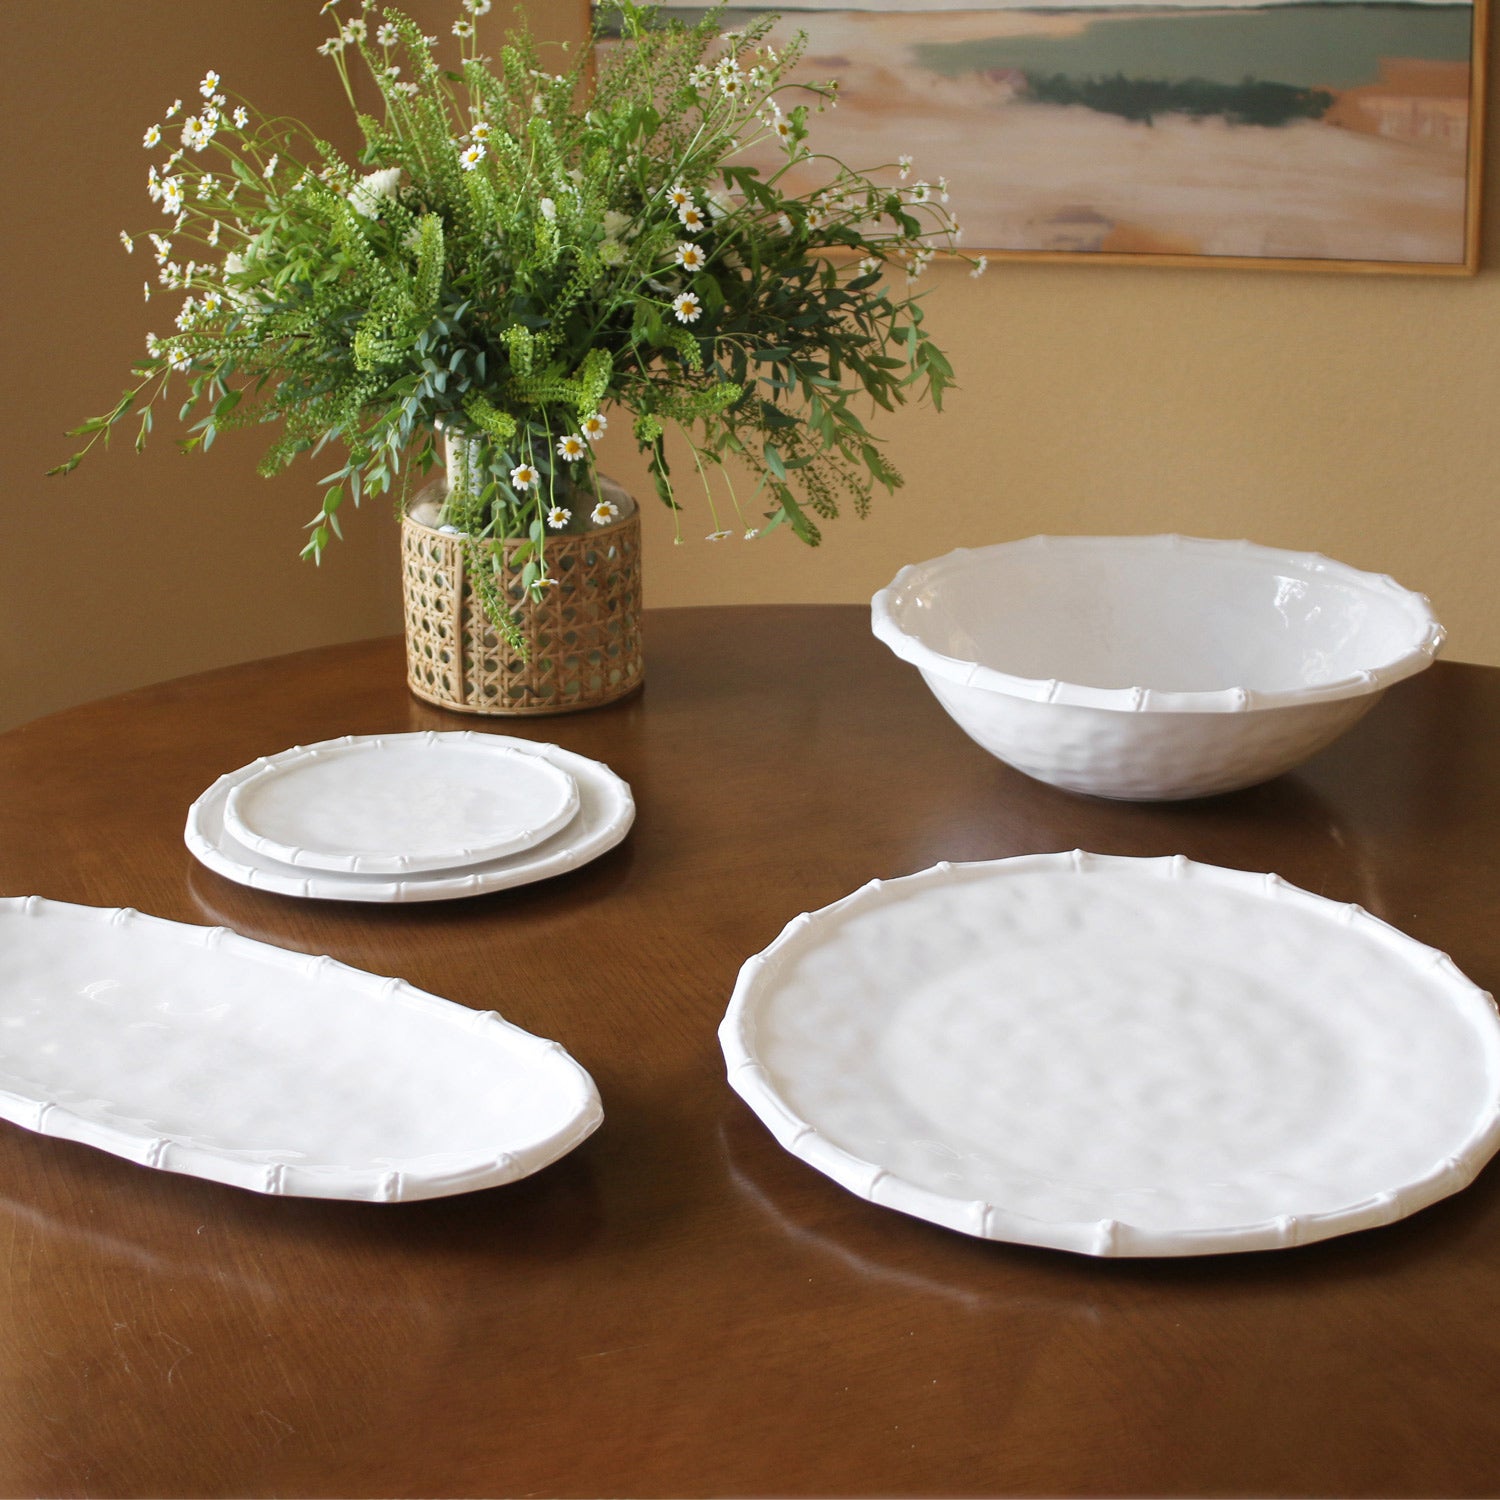 VIDA Bamboo Round Platter (White)